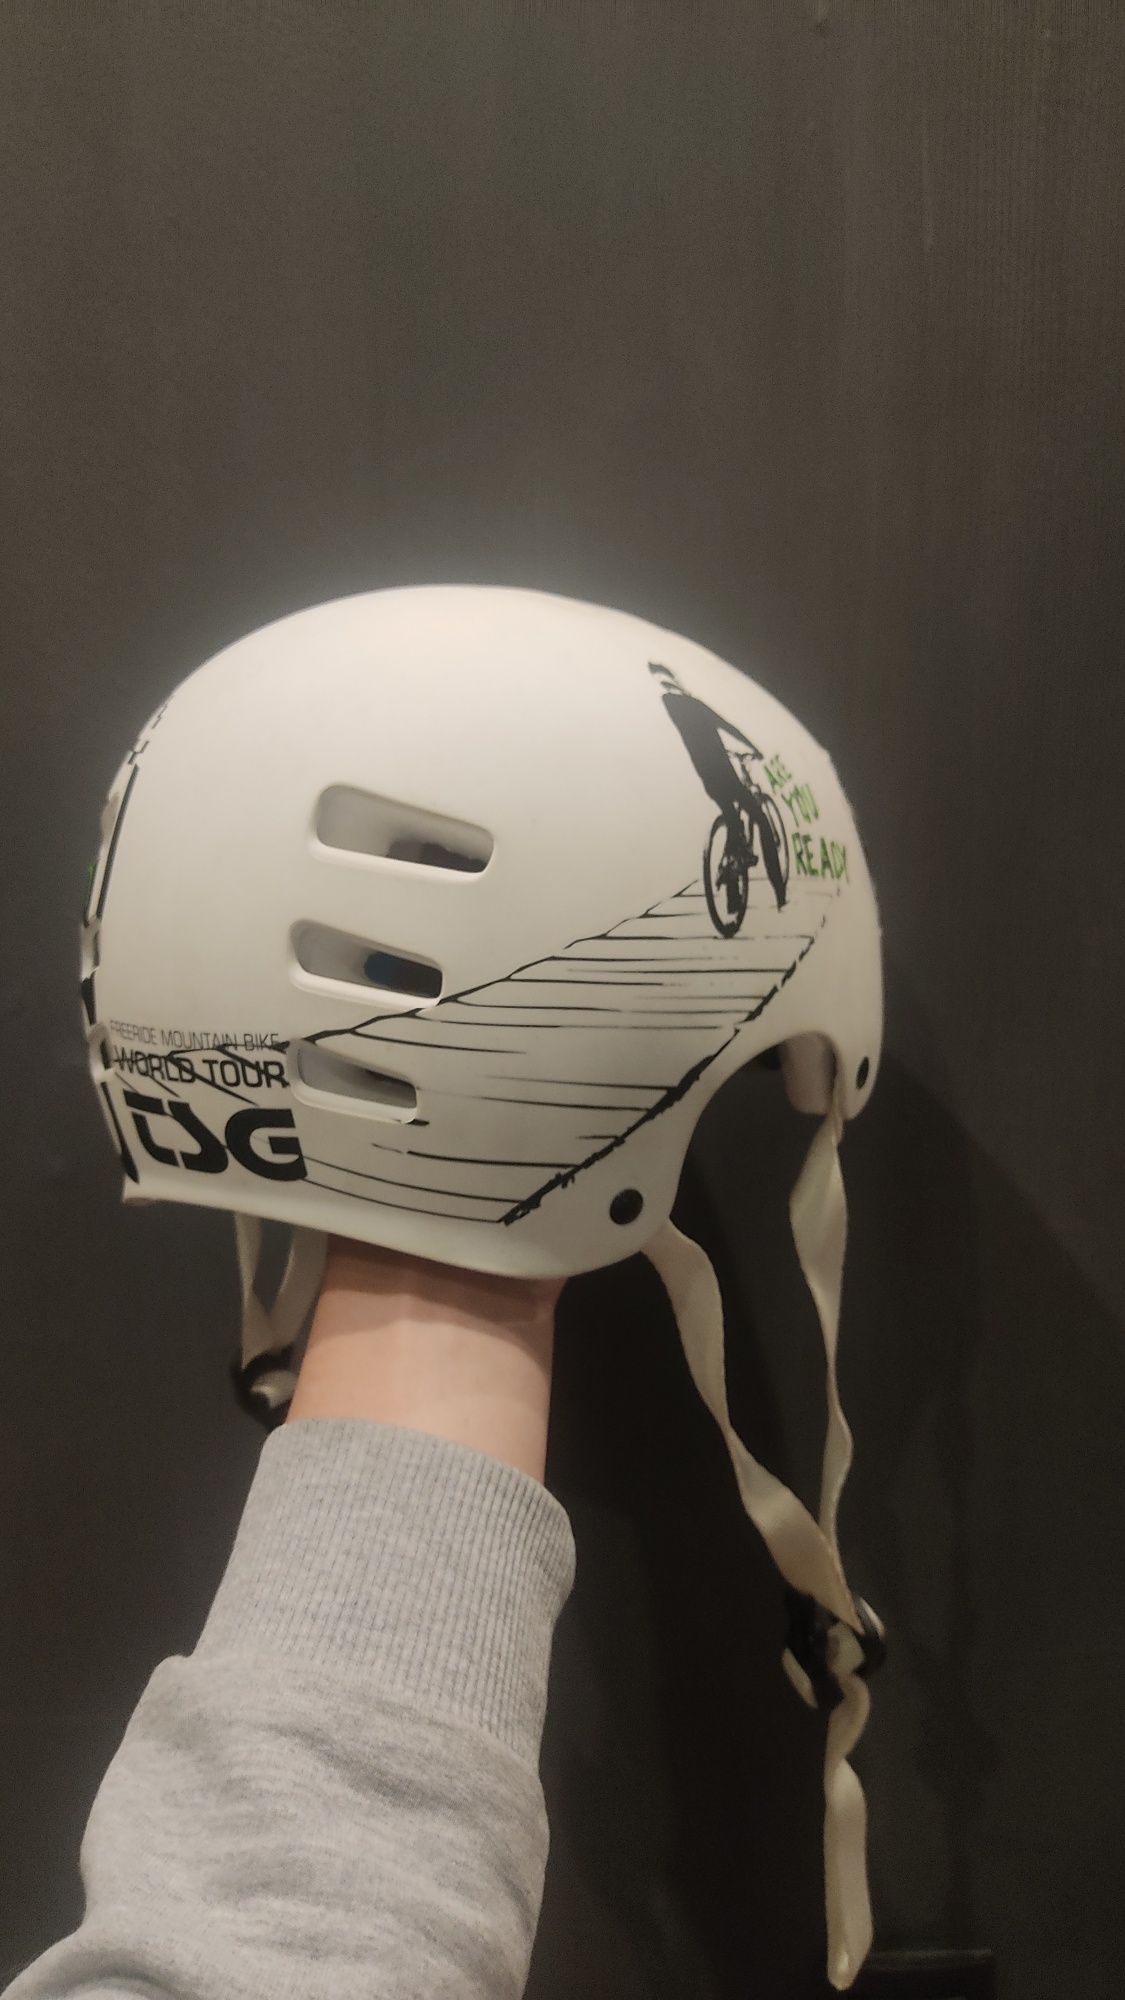 Продам шлем tsg в отличном состоянии